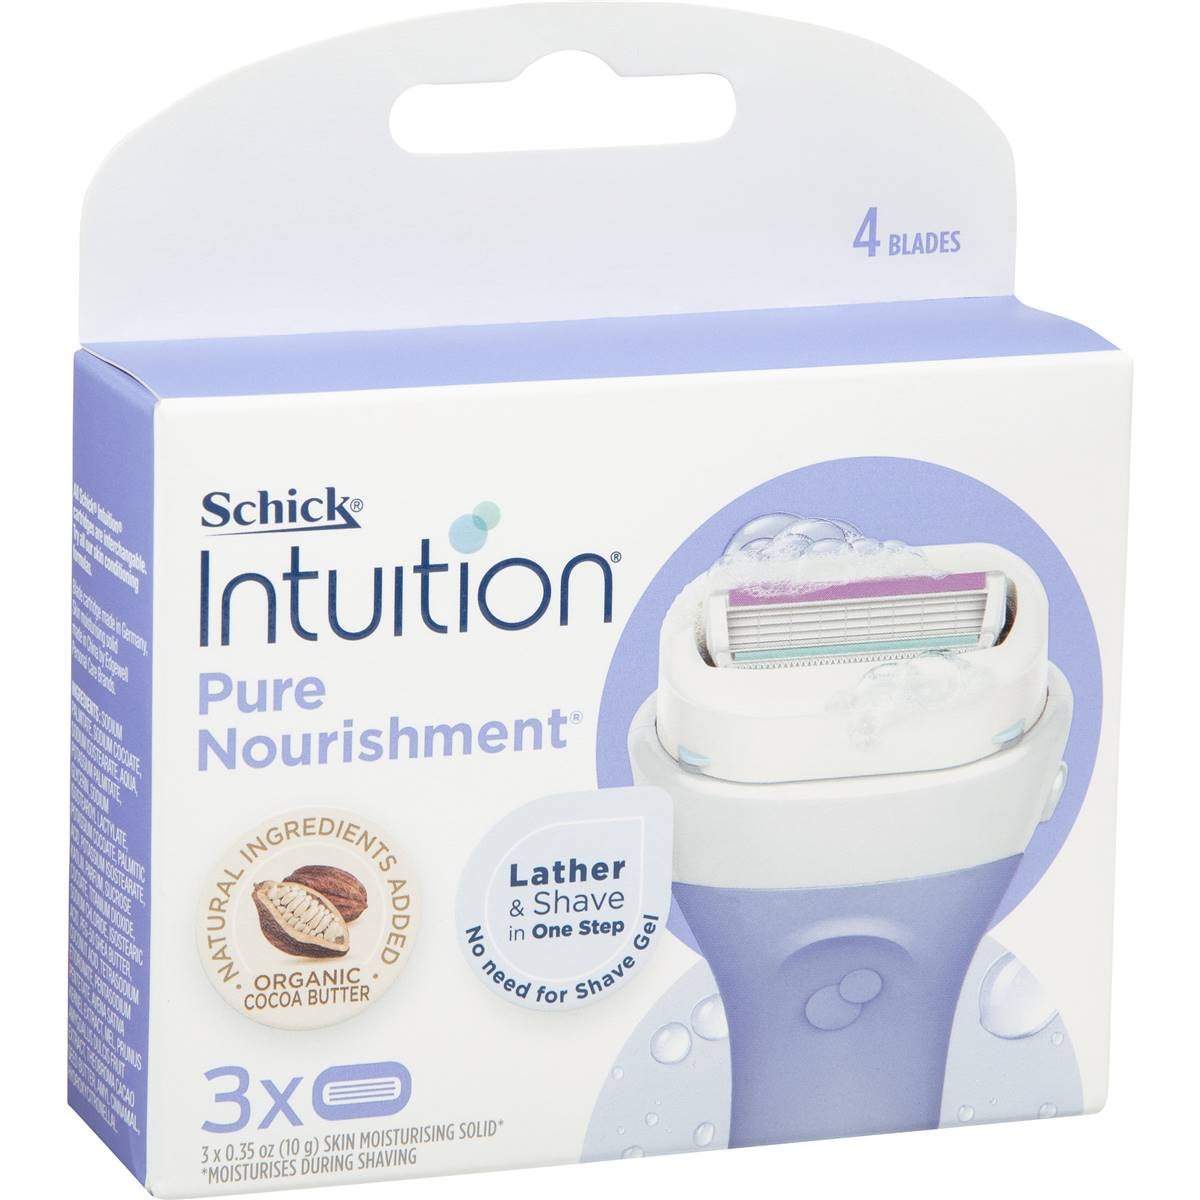 Schick Intuition Pure Nourishment Cartridges 3pk